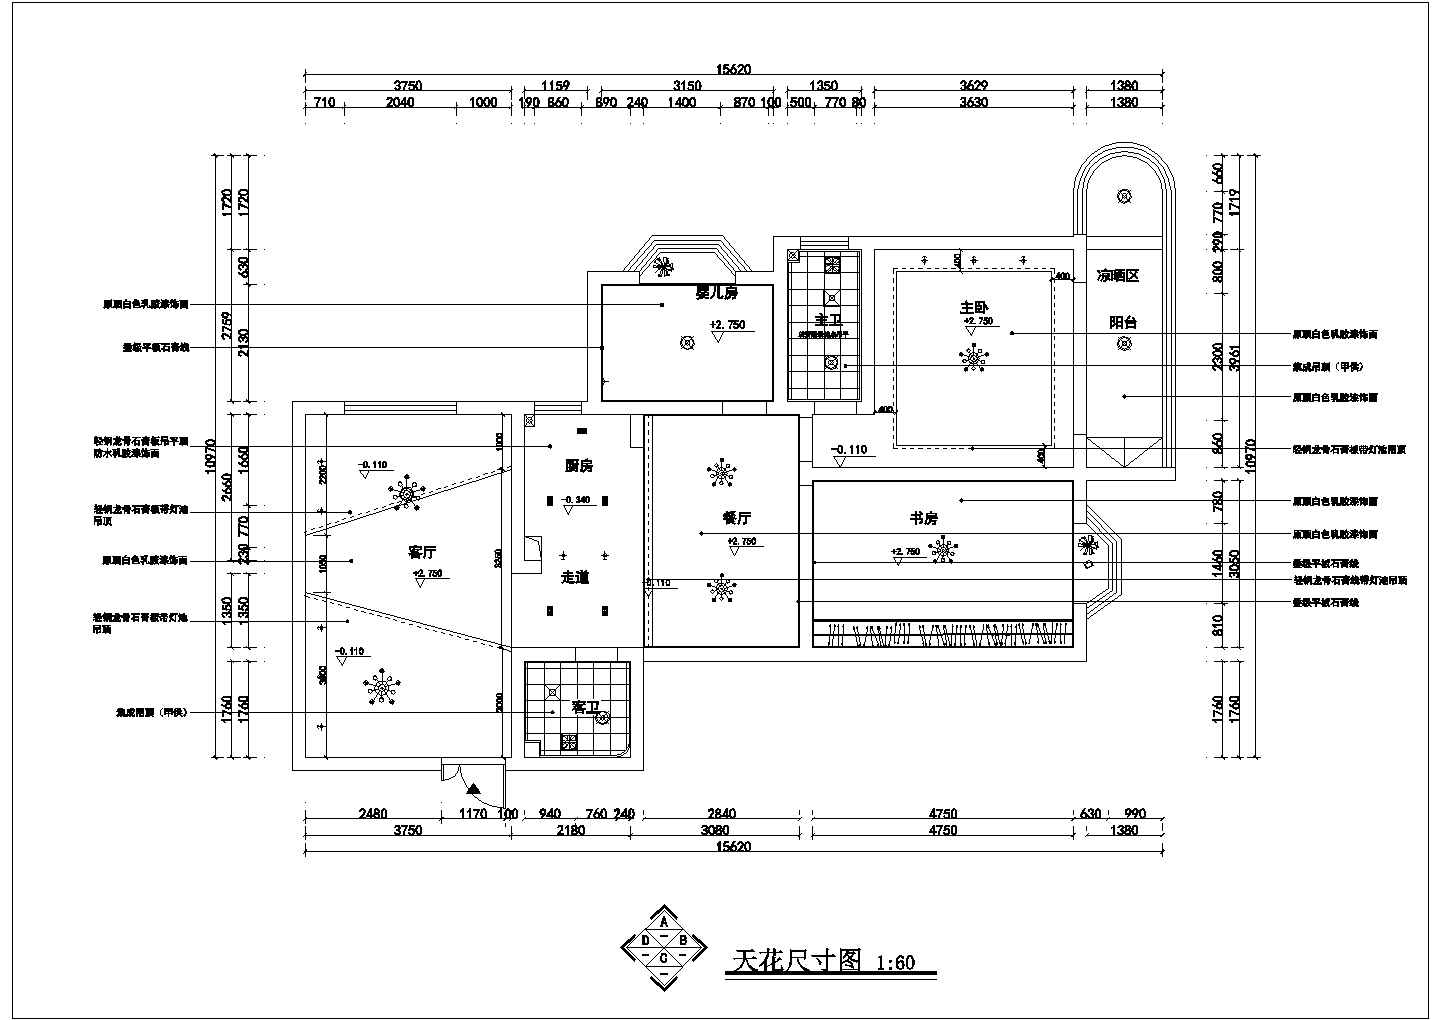 阳光新城住宅装修施工图(简约风格)